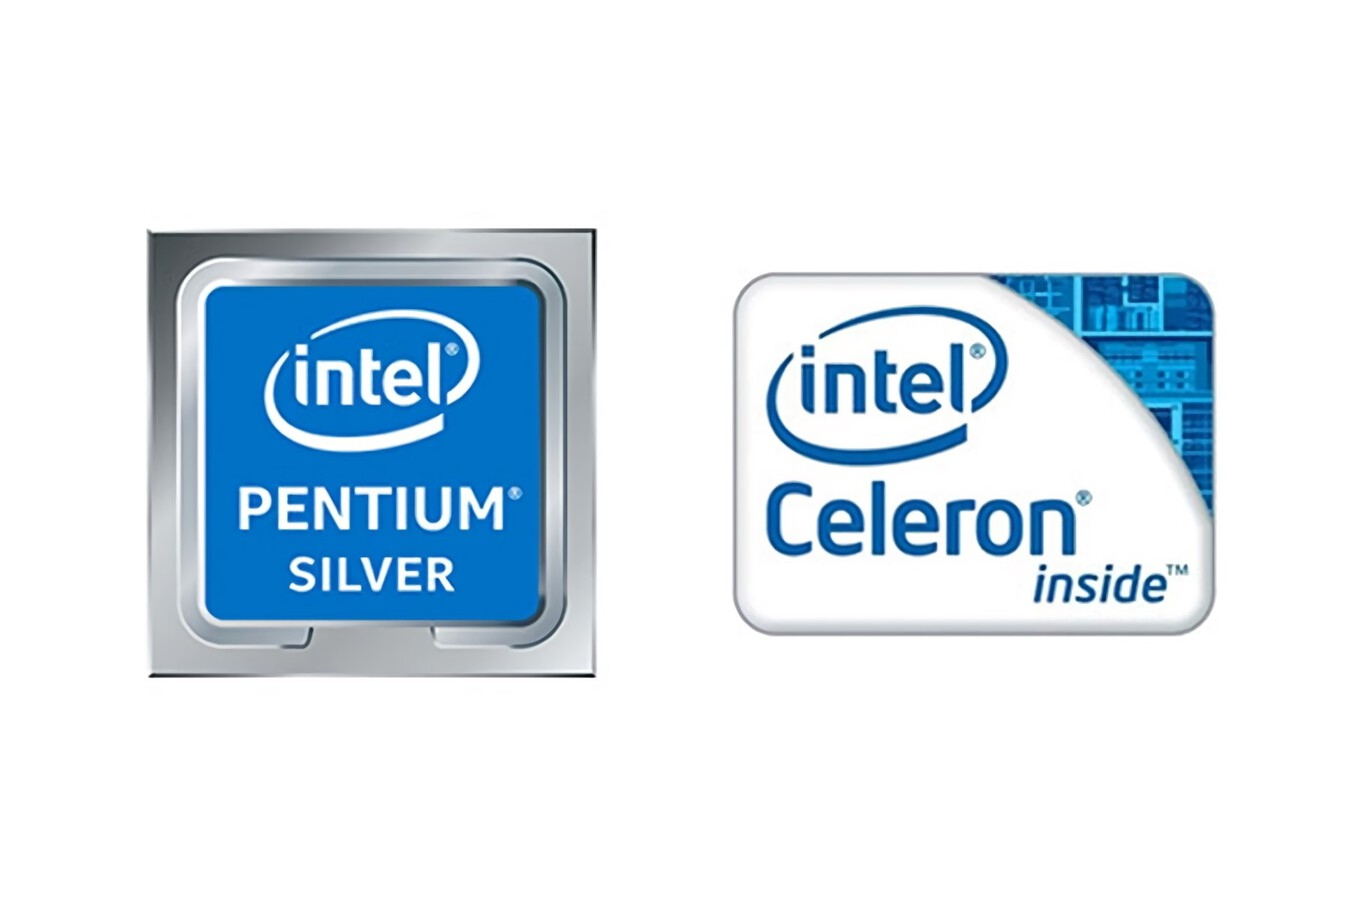 Intel eliminará las marcas Pentium y Celeron en 2023 